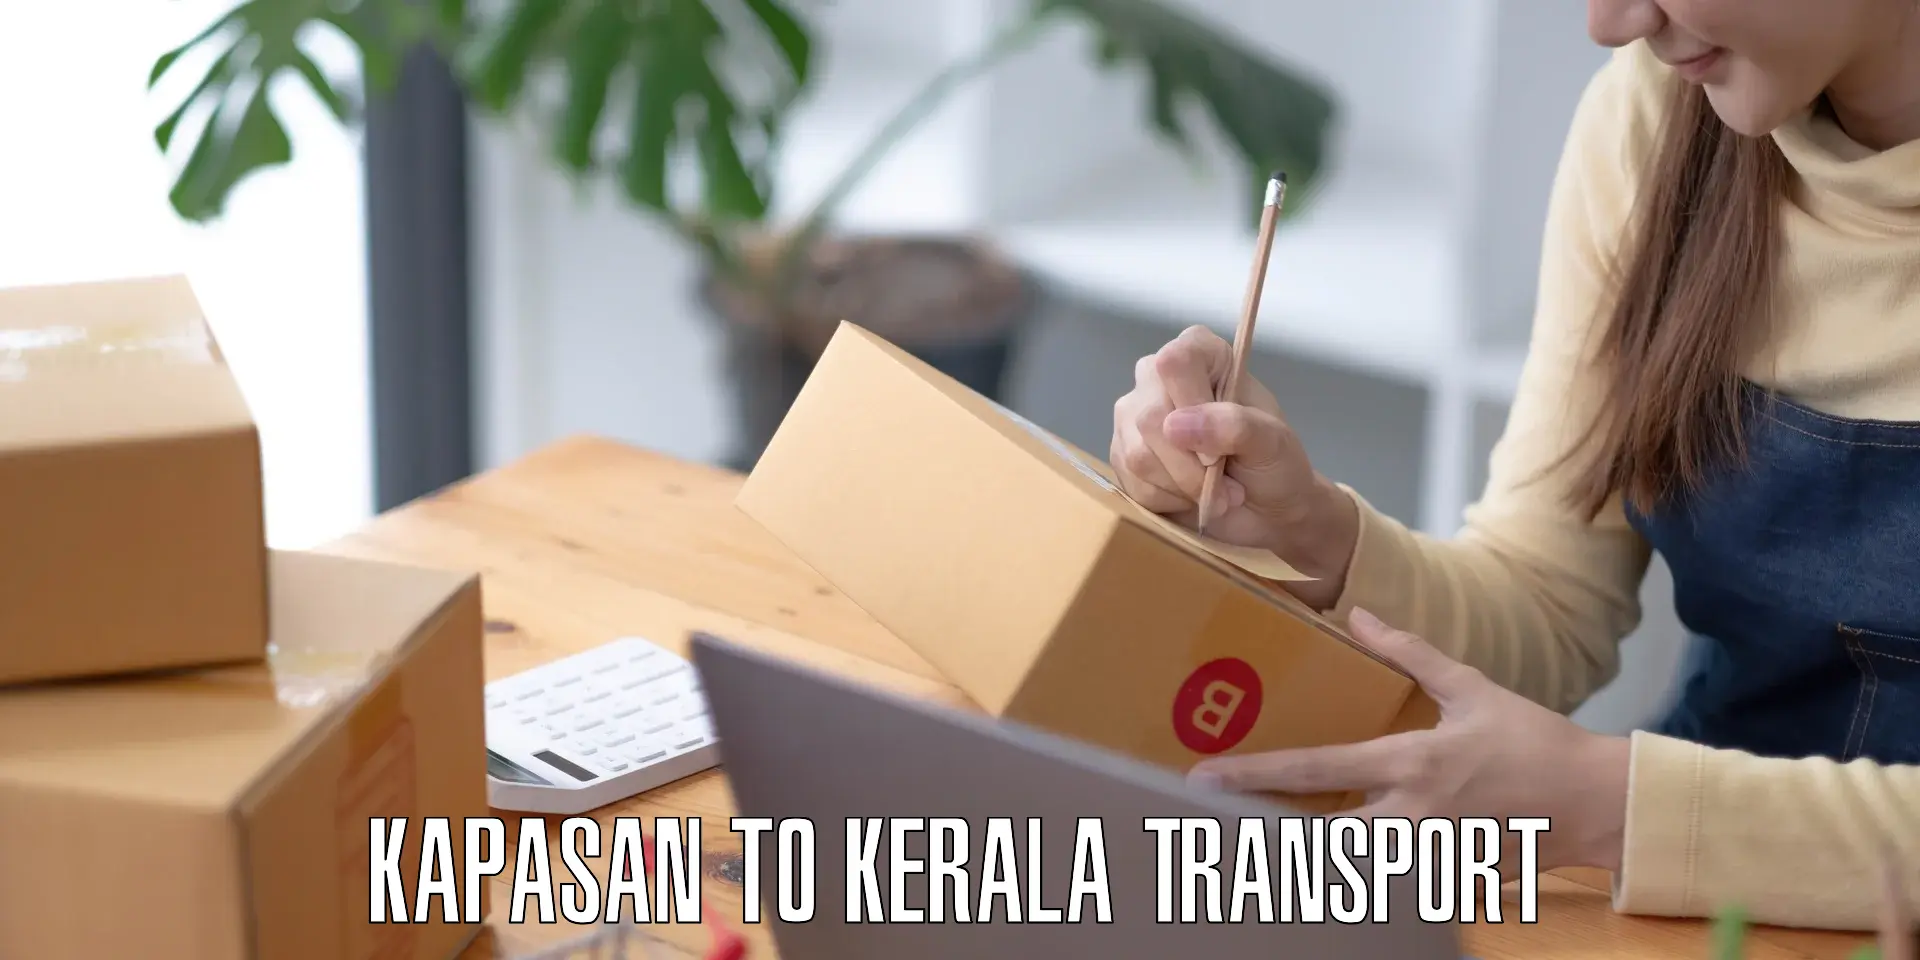 Online transport booking Kapasan to Piravom